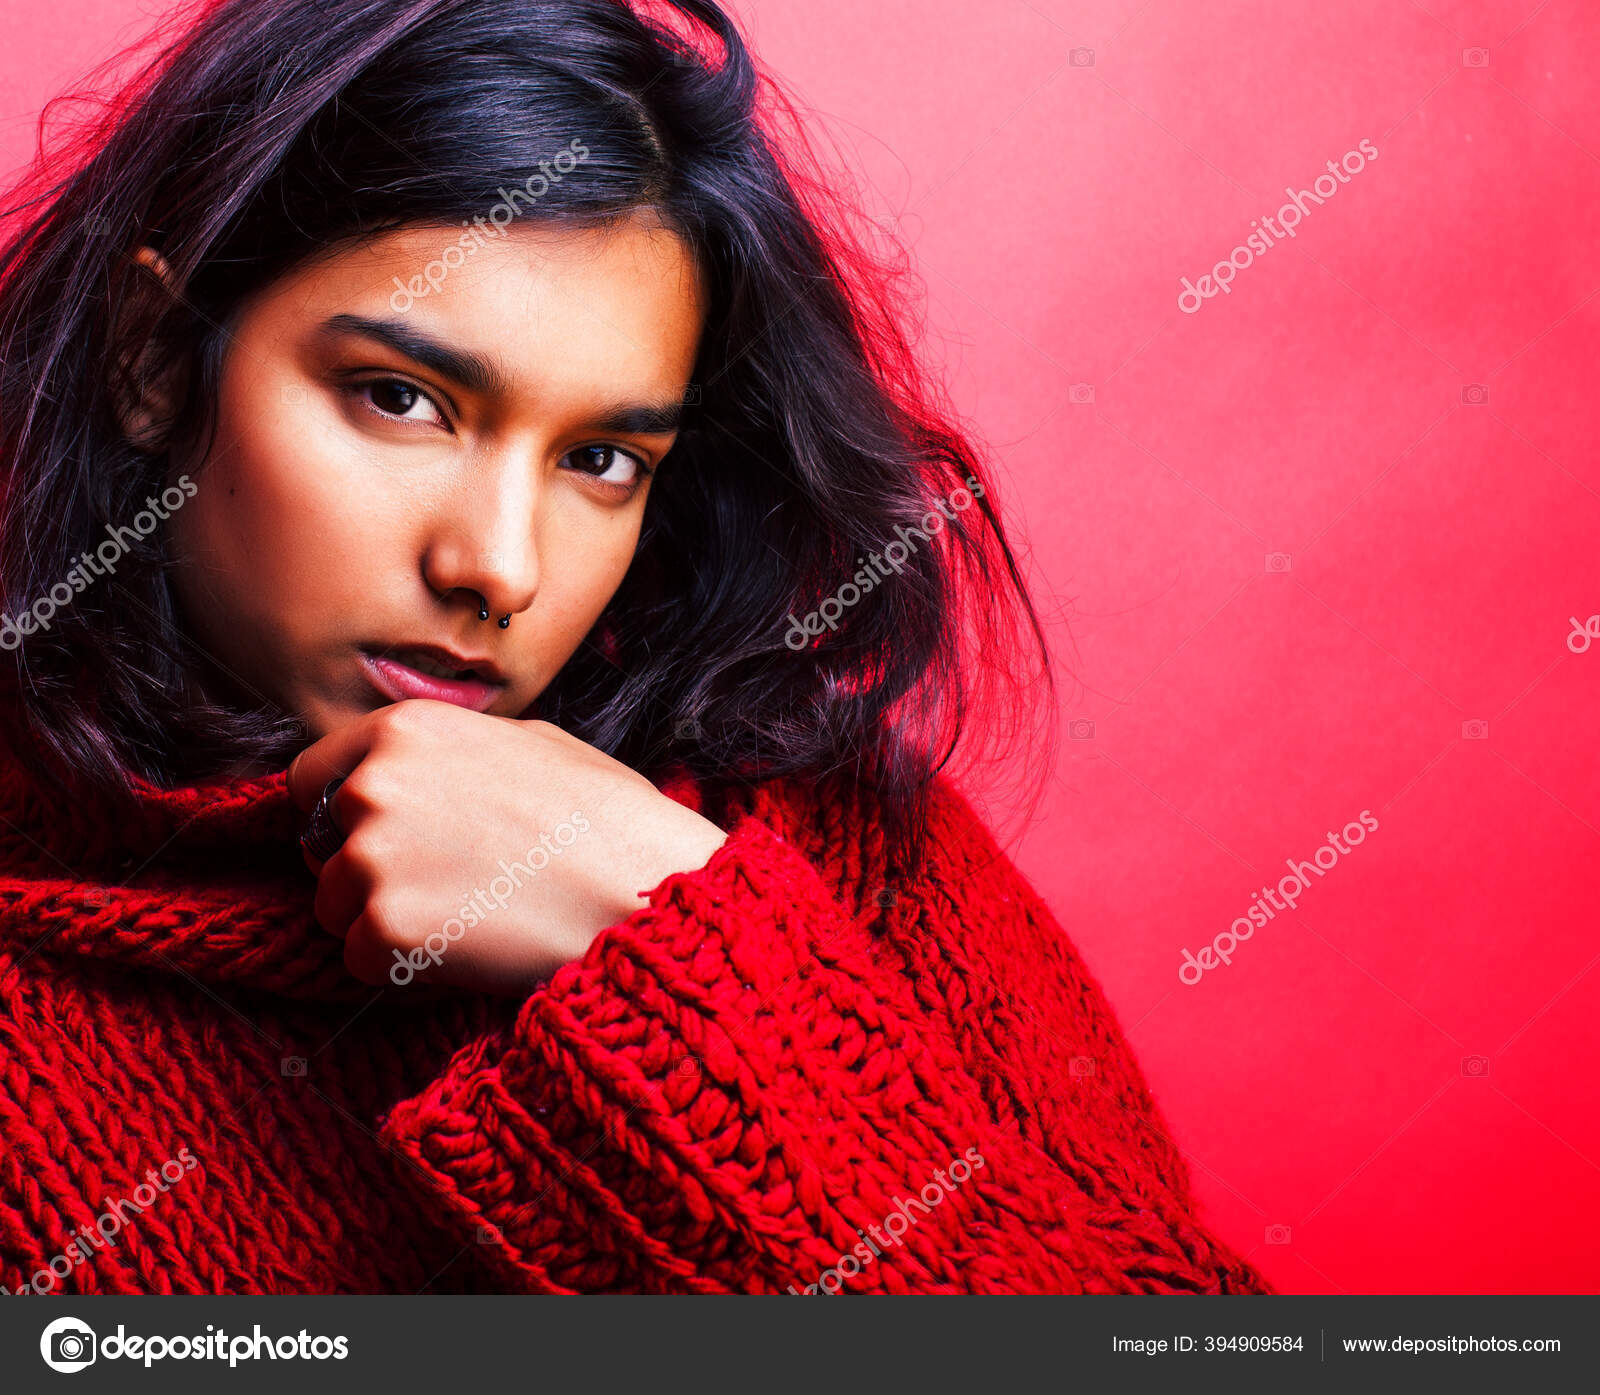 Hot Indian Girl Photo